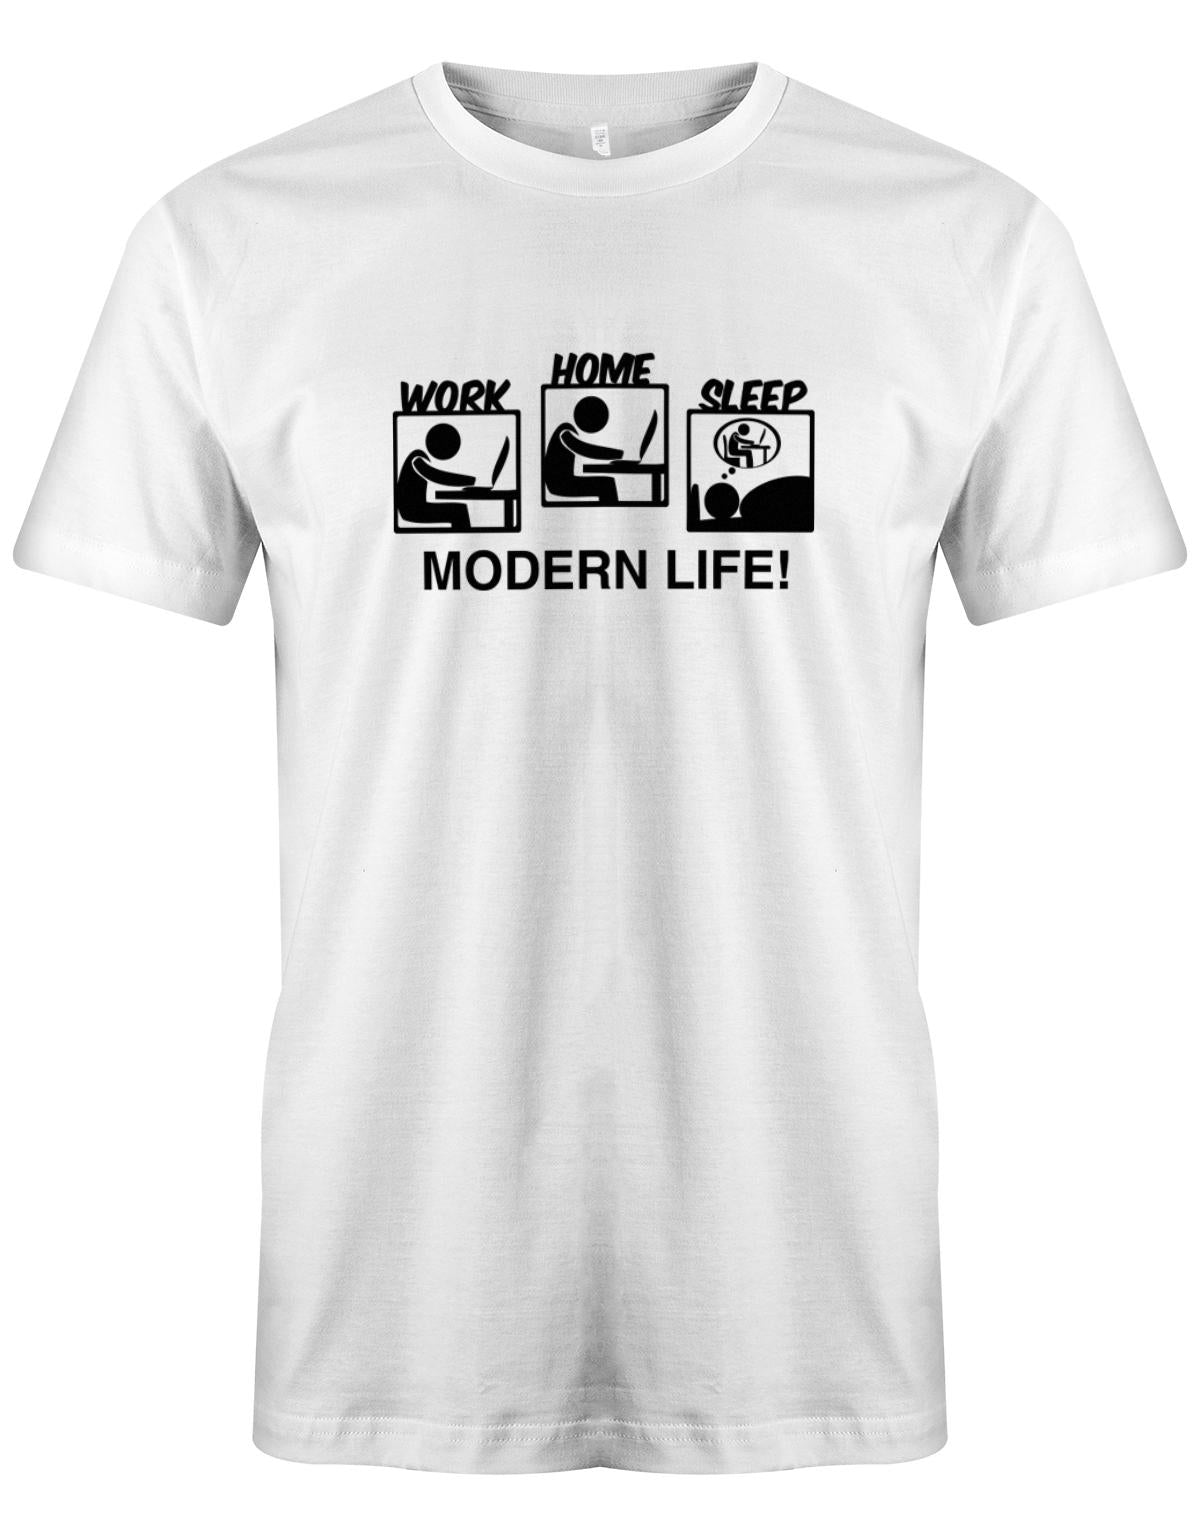 Modern-Life-Work-Home-Sleep-Herren-Gamer-Shirt-Weiss